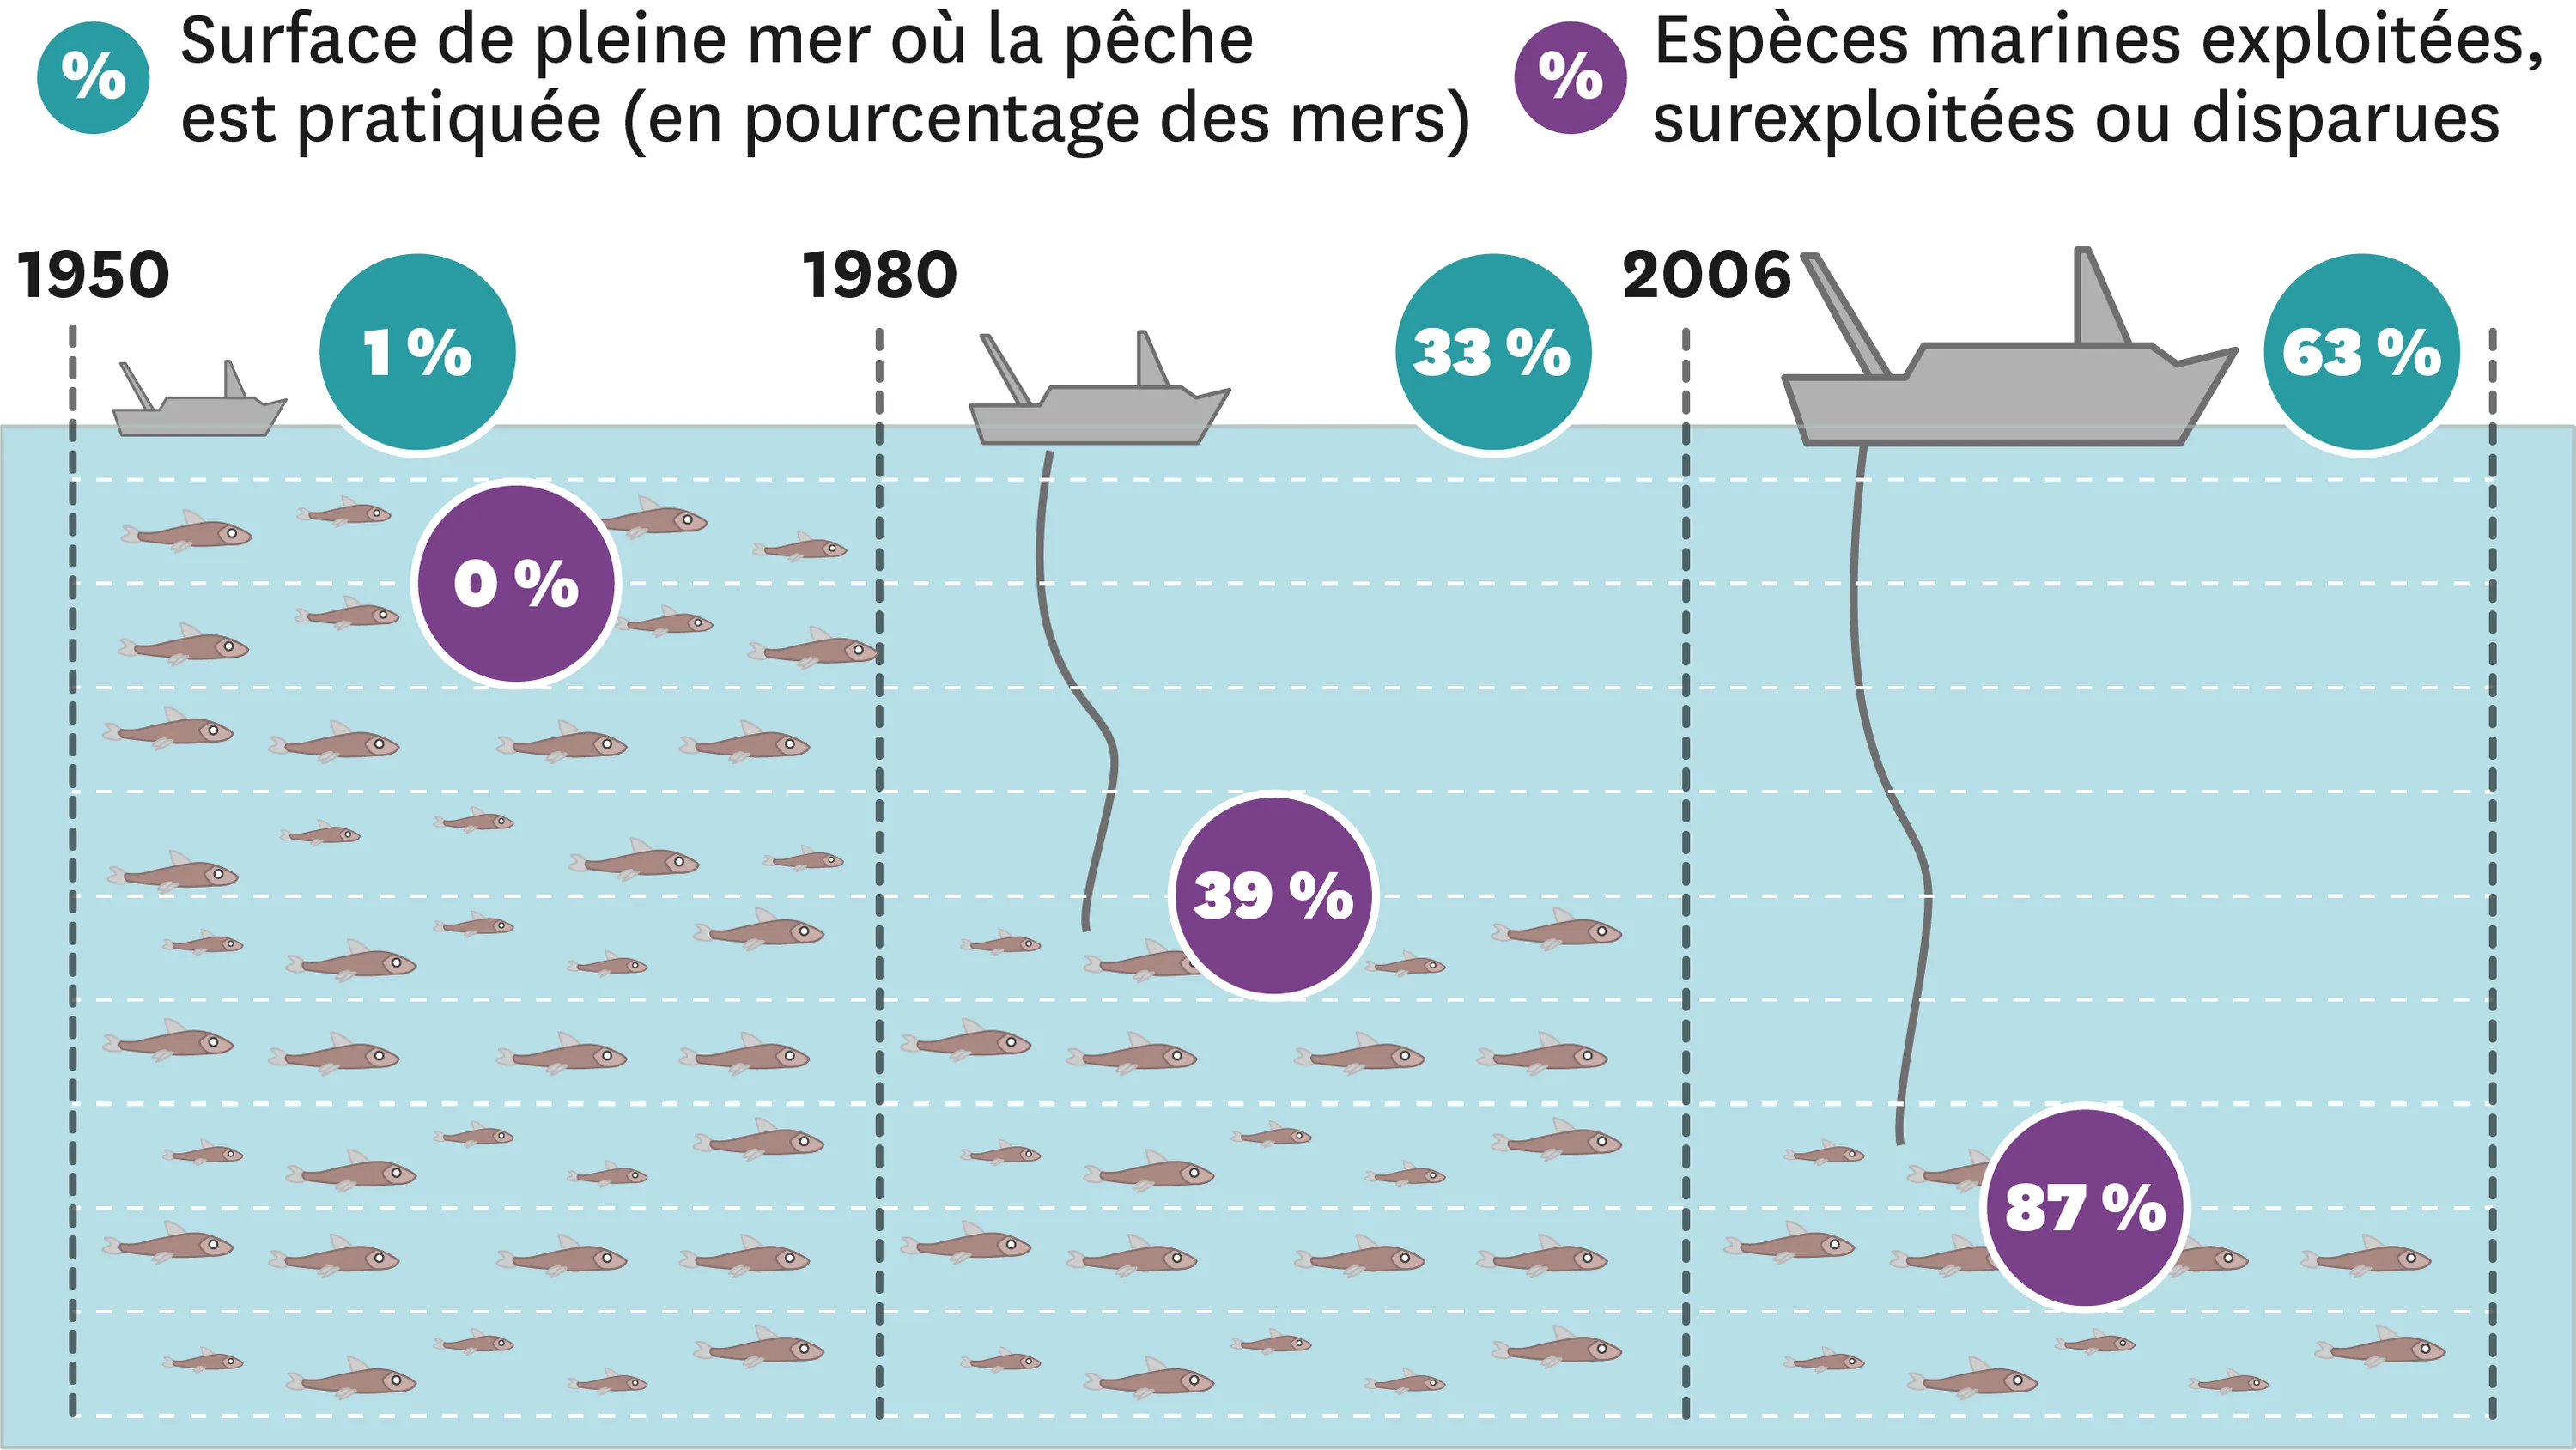 Les zones de pleine mer où la pêche est pratiquée et les conséquences sur les espèces marines.
  En 1950, il y a 1% de la surface de pleine mer où la pêche est pratiquée et 0% des espèces marines sont exploitées, surexploitées ou disparues.
  En 1980, il y a 33% de la surface de pleine mer où la pêche est pratiquée et 39% des espèces marines sont exploitées, surexploitées ou disparues.
  En 2006, il y a 63% de la surface de pleine mer où la pêche est pratiquée et 87% des espèces marines sont exploitées, surexploitées ou disparues.